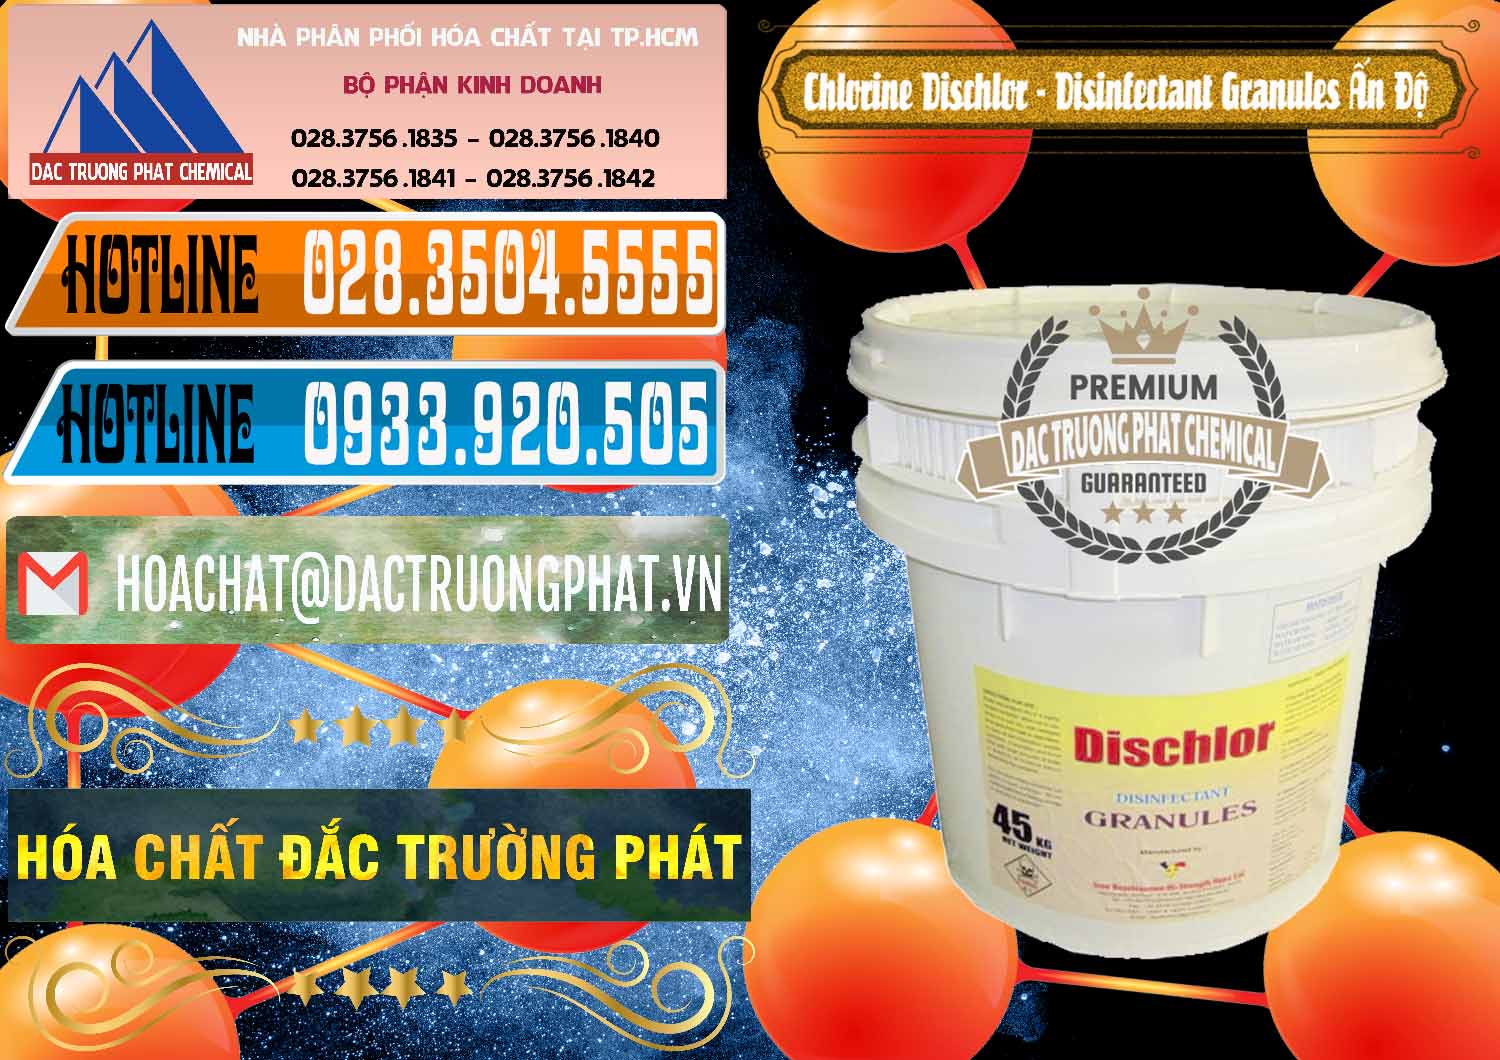 Nhập khẩu _ bán Chlorine – Clorin 70% Dischlor - Disinfectant Granules Ấn Độ India - 0248 - Công ty chuyên phân phối và cung ứng hóa chất tại TP.HCM - stmp.net